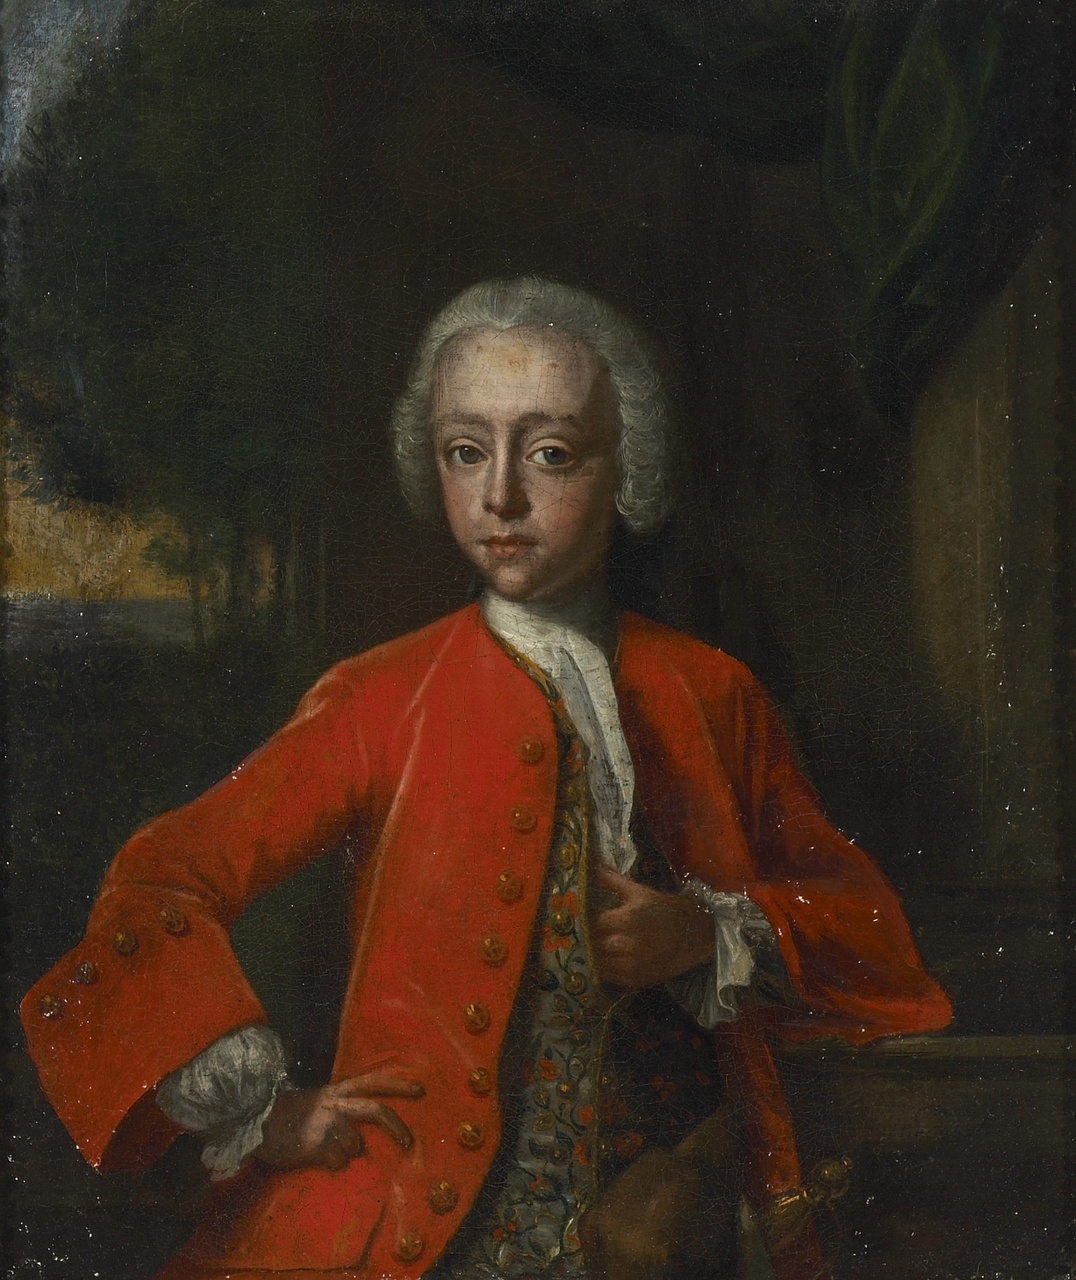 Cornelis Kien van Citters als jongen (1732-1805), zoon van Wilhelm van Citters en Maria Kien, Philip van Dijk